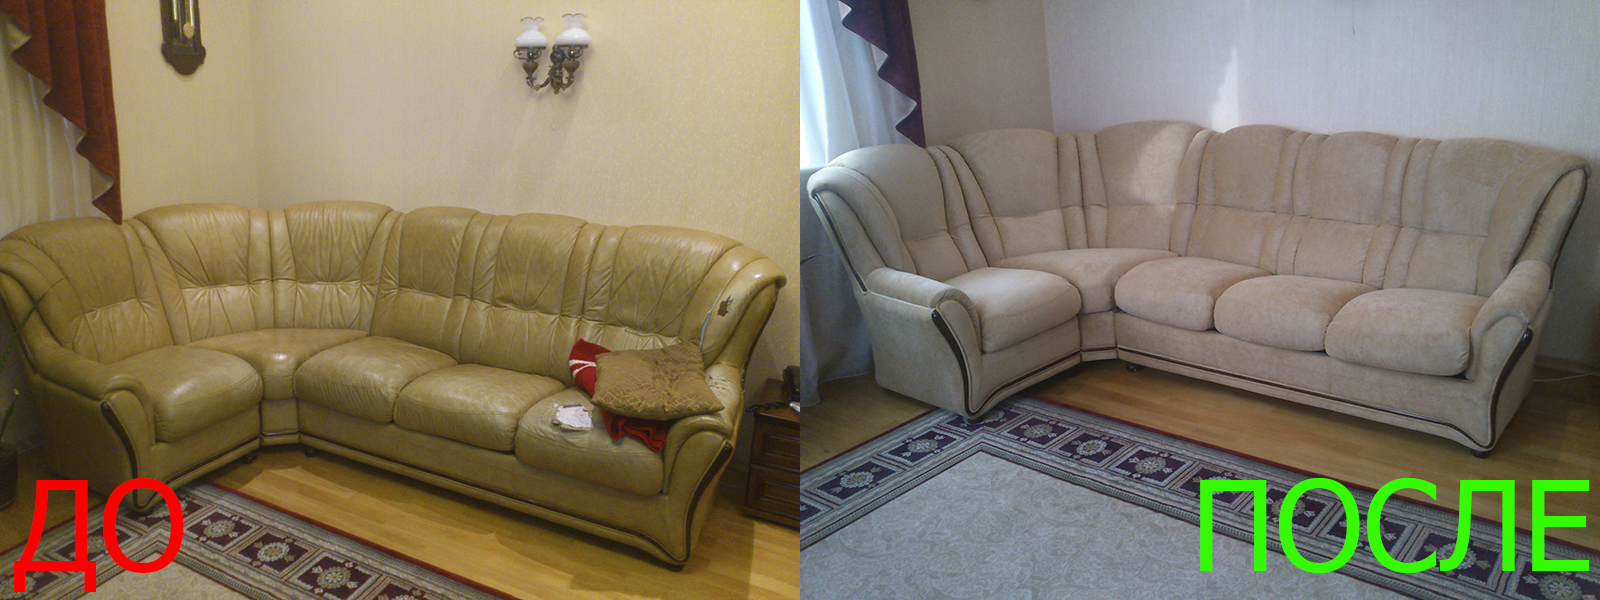 Обивка углового дивана в Казани разумные цены на услуги, опытные специалисты